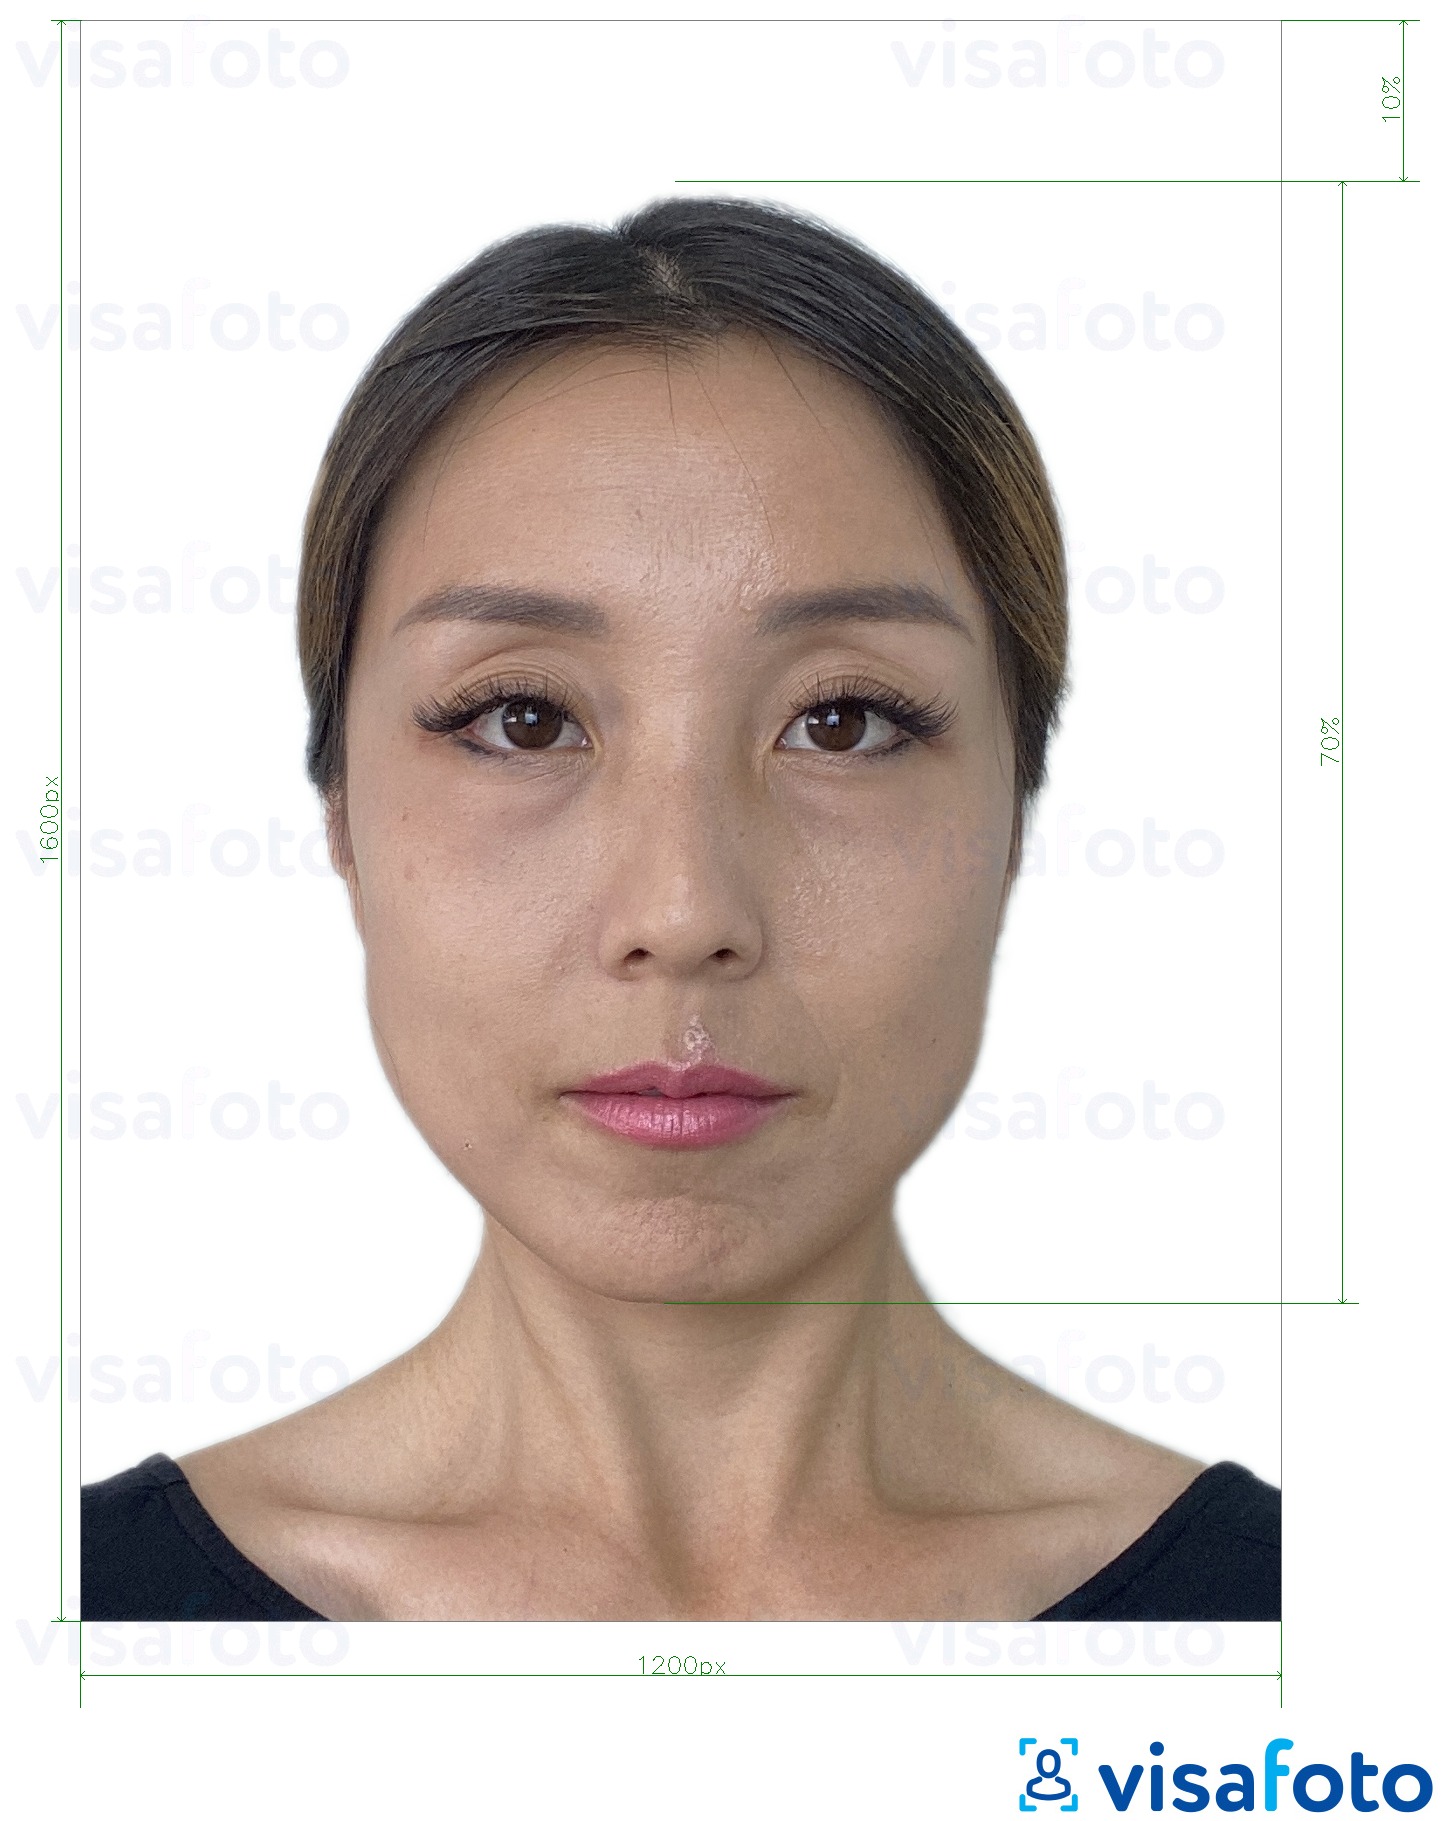 ဒီပံုရဲ့ ဥပမာ ဟောင်ကောင်အွန်လိုင်း E-နိုင်ငံကူးလက်မှတ် 1200x1600 pixels ကို အတြက္​တိက်​ေသာသတ္​မွတ္​ခ်က္​မ်ားႏွင္​့